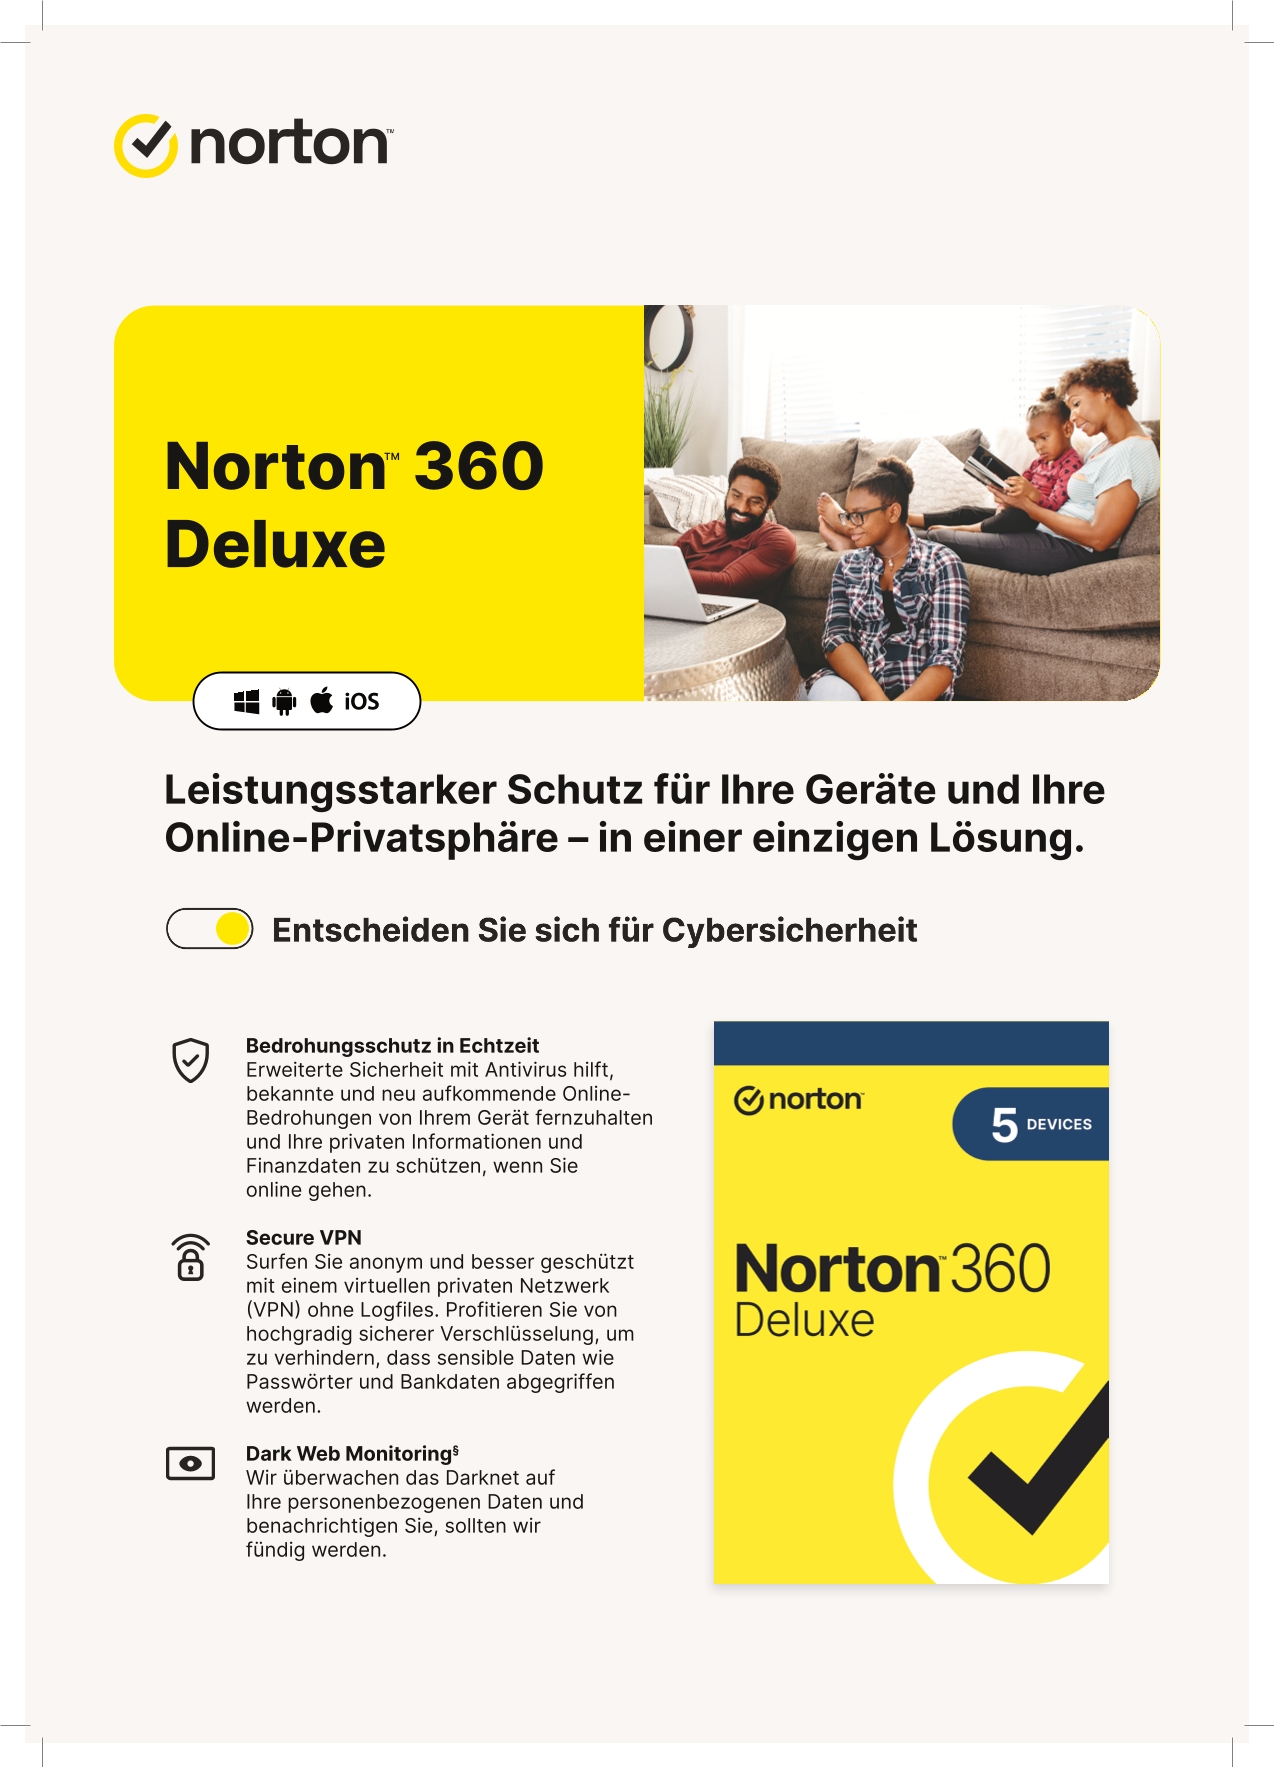 Norton-Deluxe-Broschure-1.jpeg